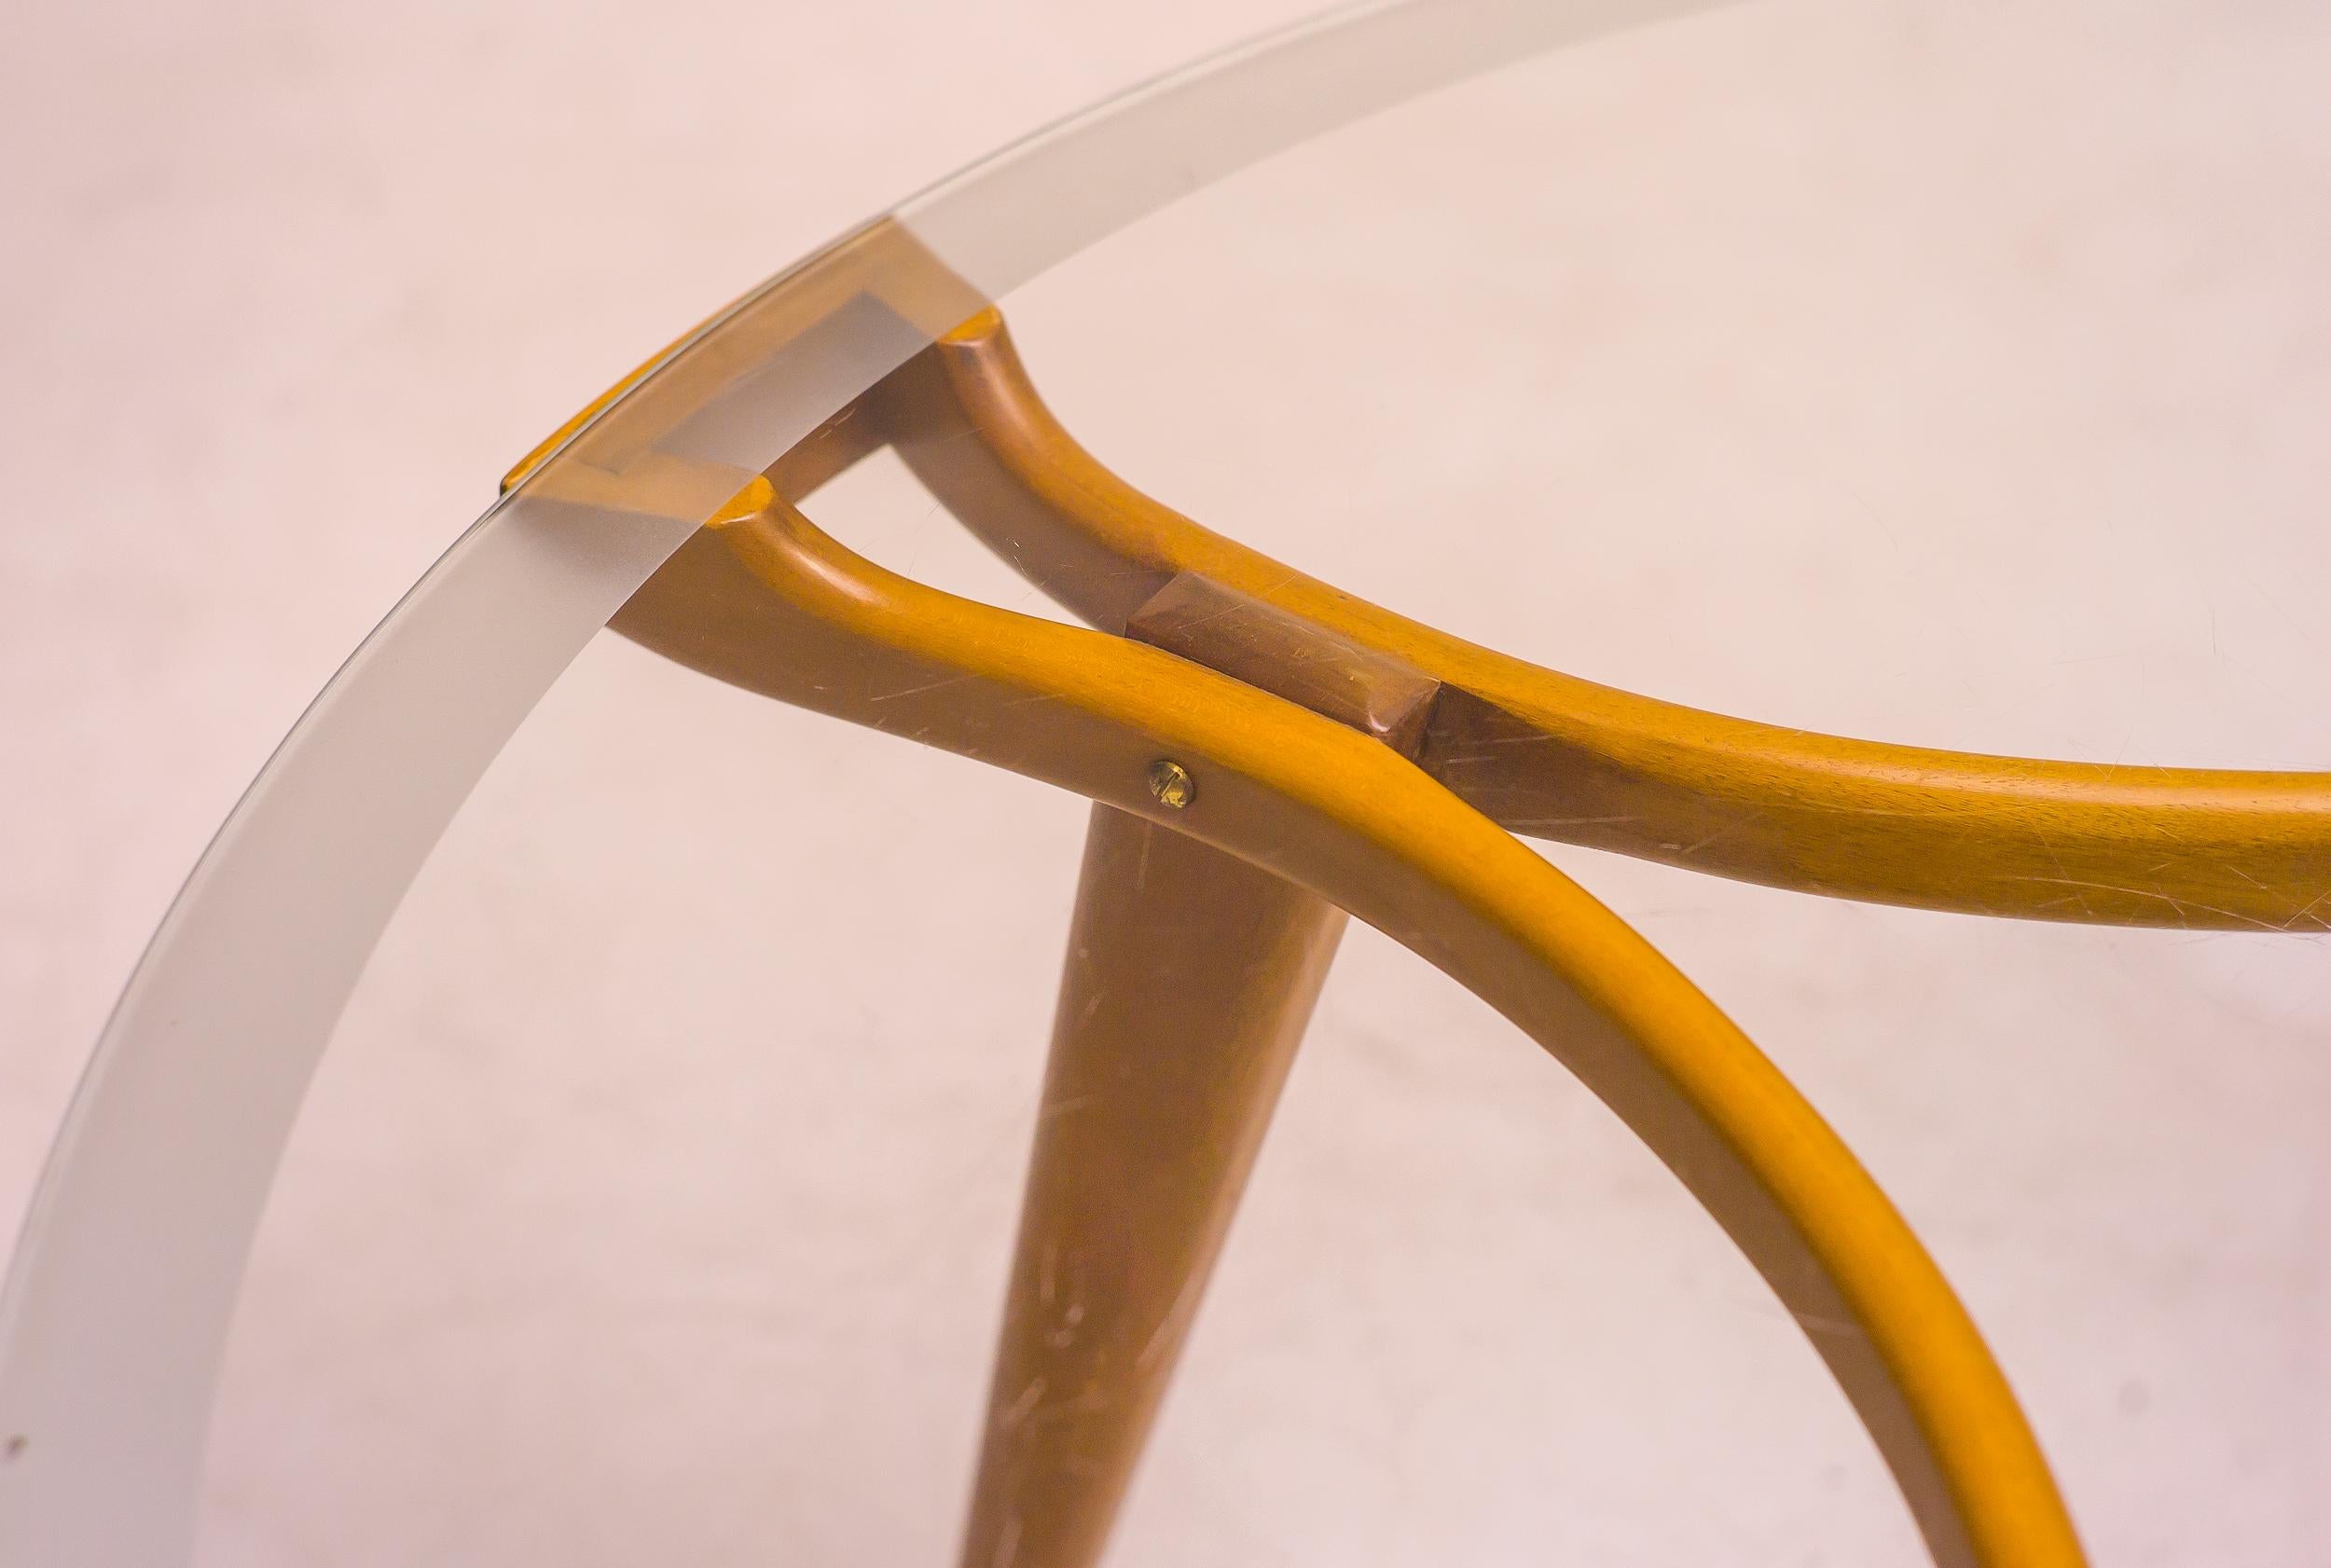 Elégante table basse des années 1950 avec plateau en verre sablé d'origine, conçue par William Watting pour Fristho, vers 1955. Cadre en noyer européen avec quincaillerie en laiton.

William Watting est un designer de meubles danois qui a vécu de